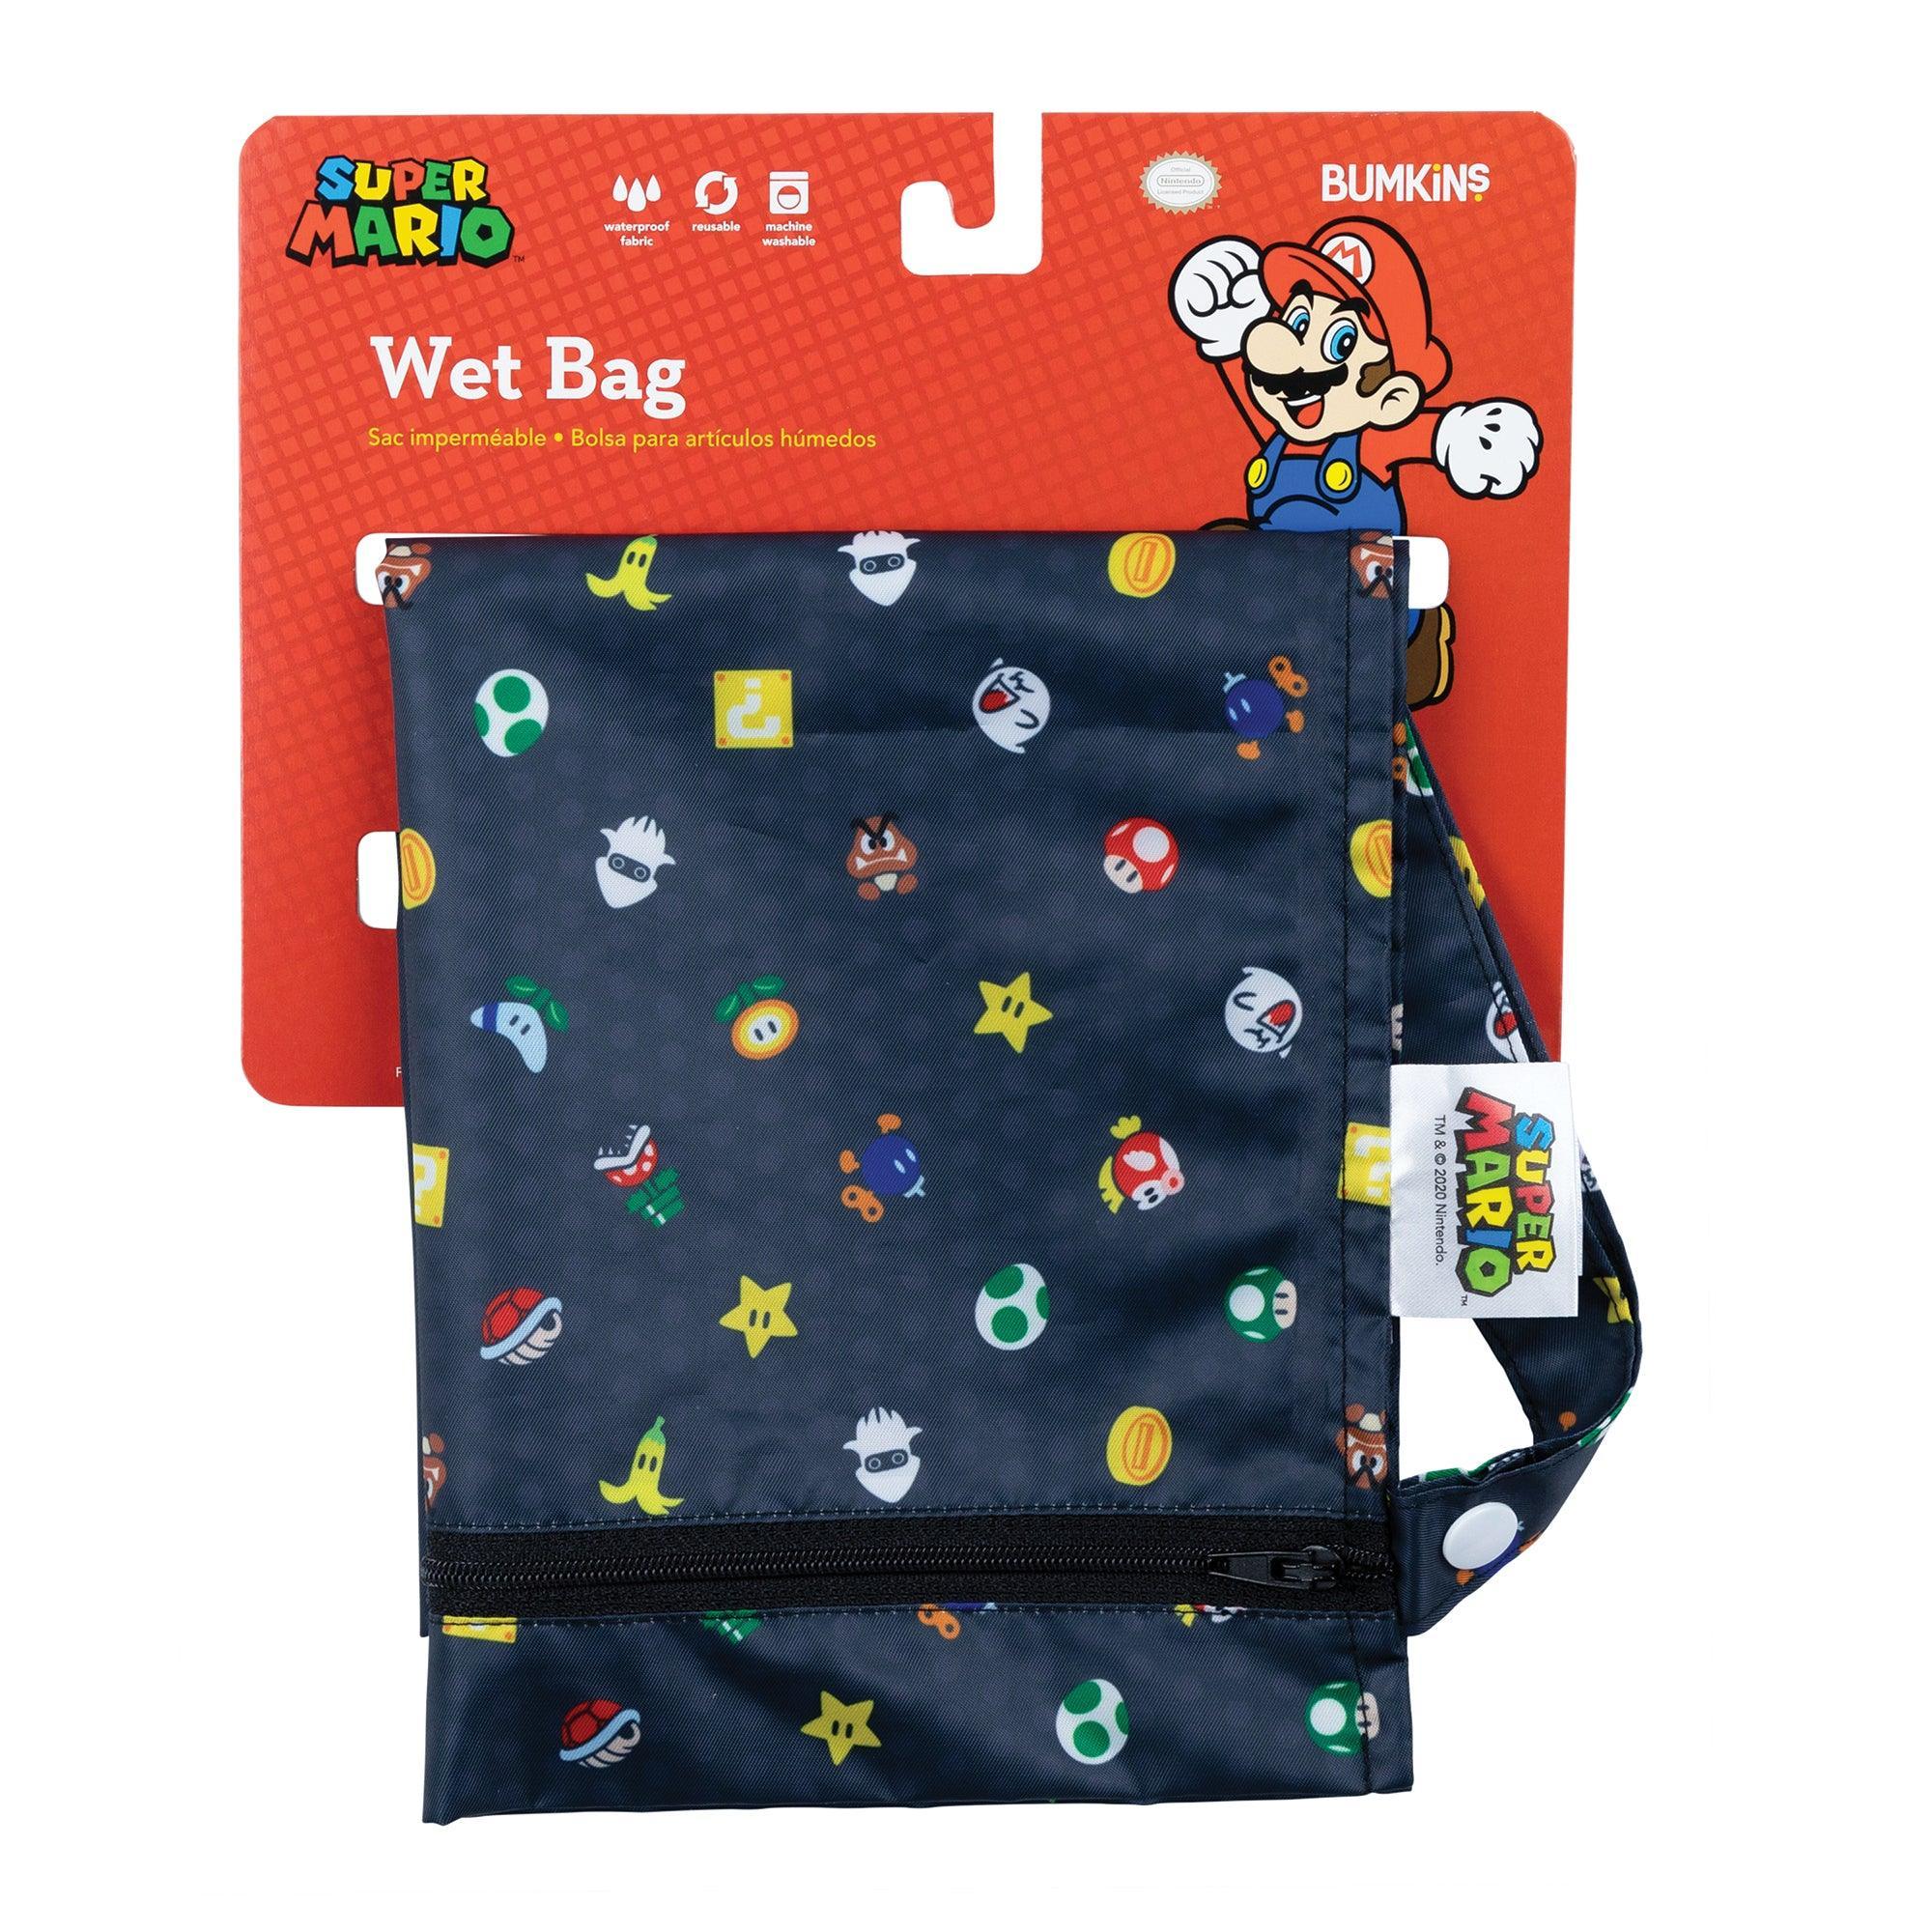 Wet Bag: Super Mario™ Lineup - Bumkins